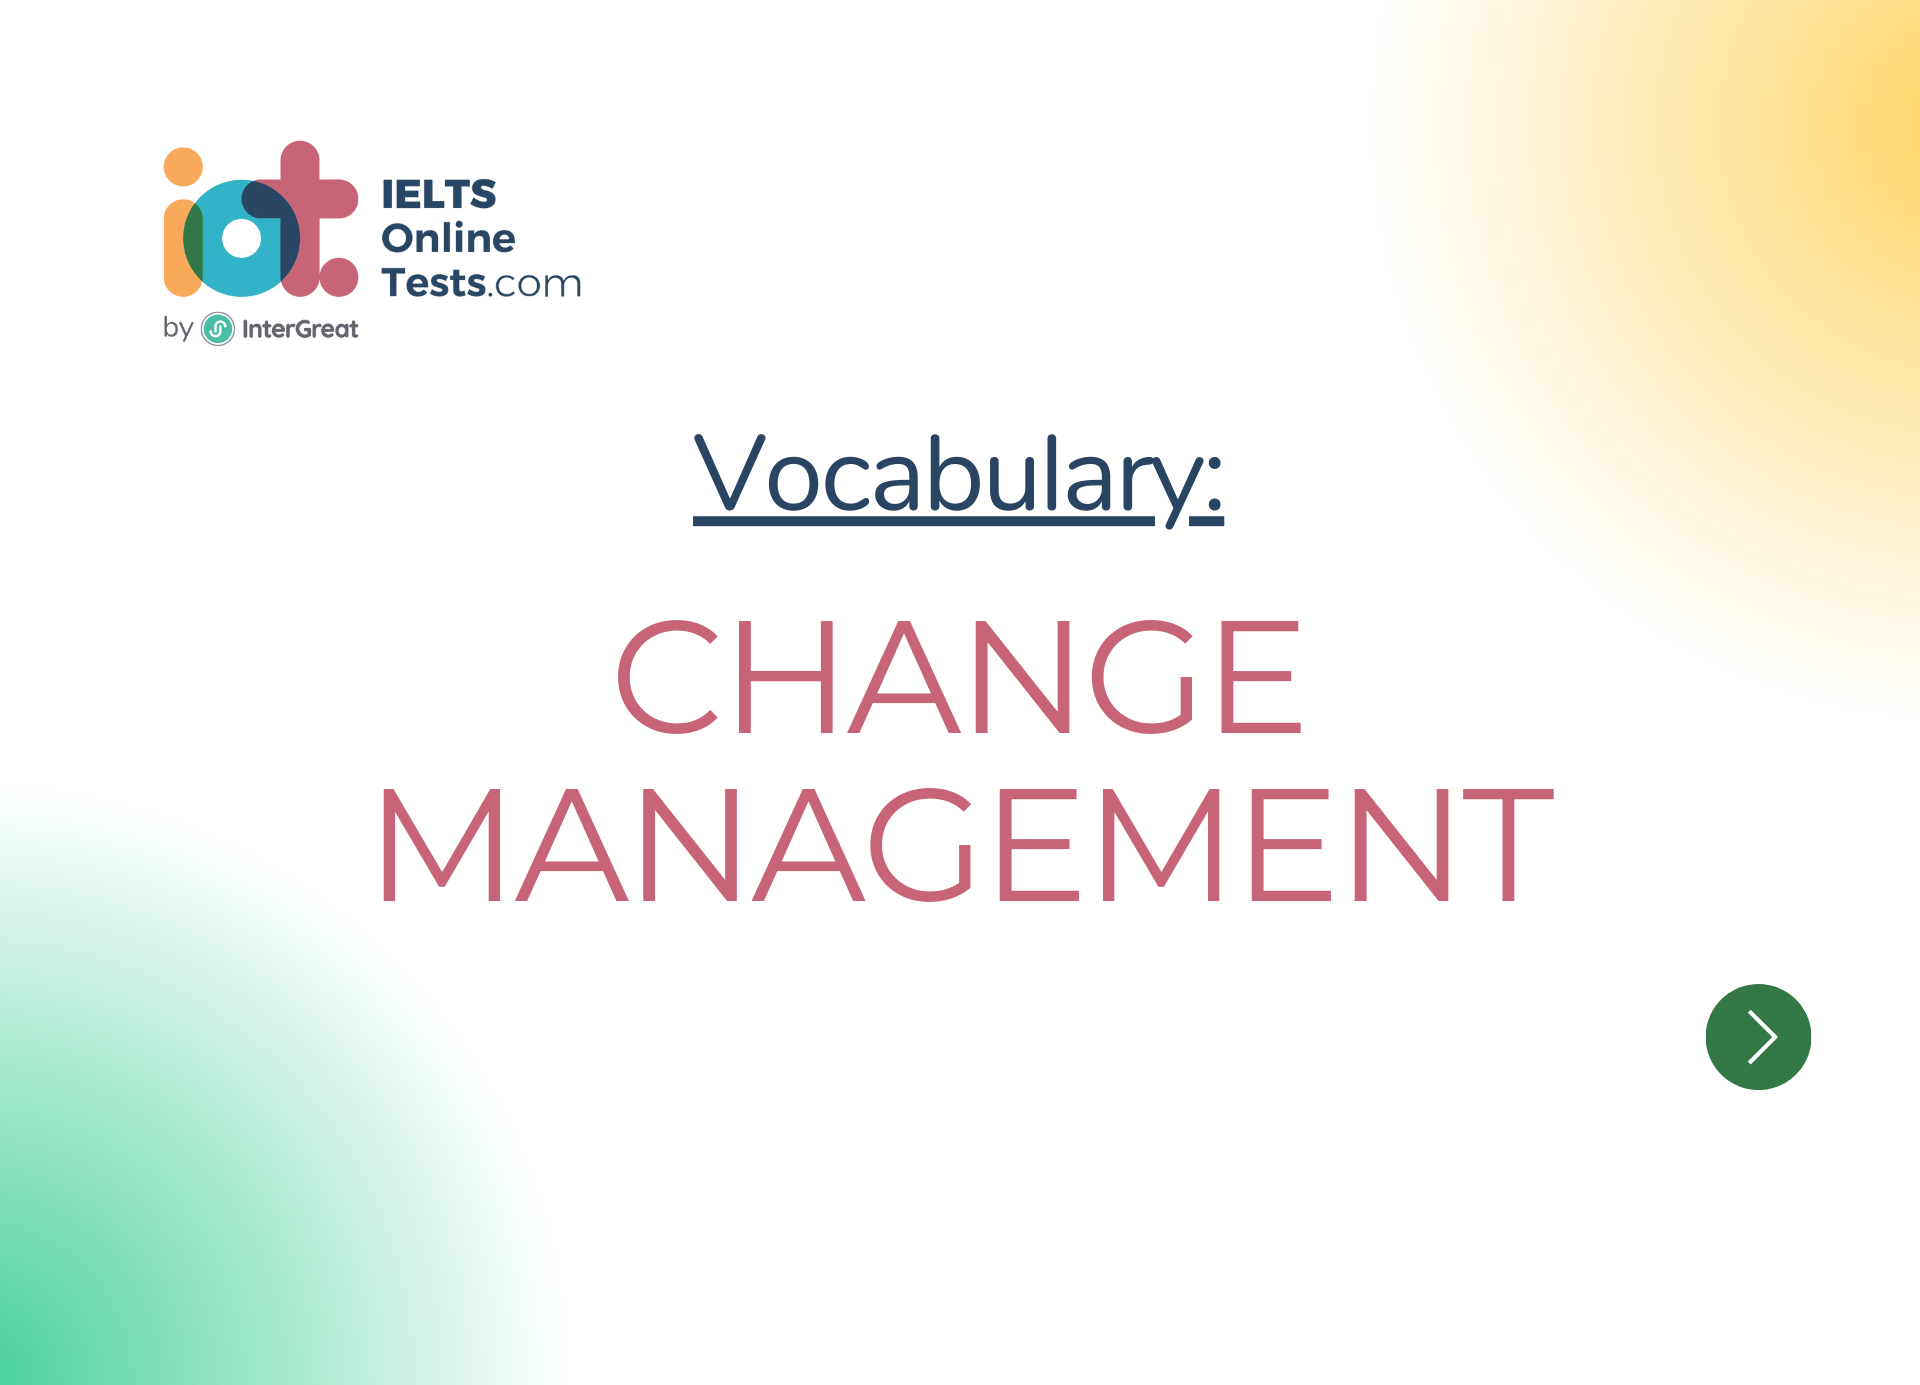 Thay đổi cách quản lý (Change management)